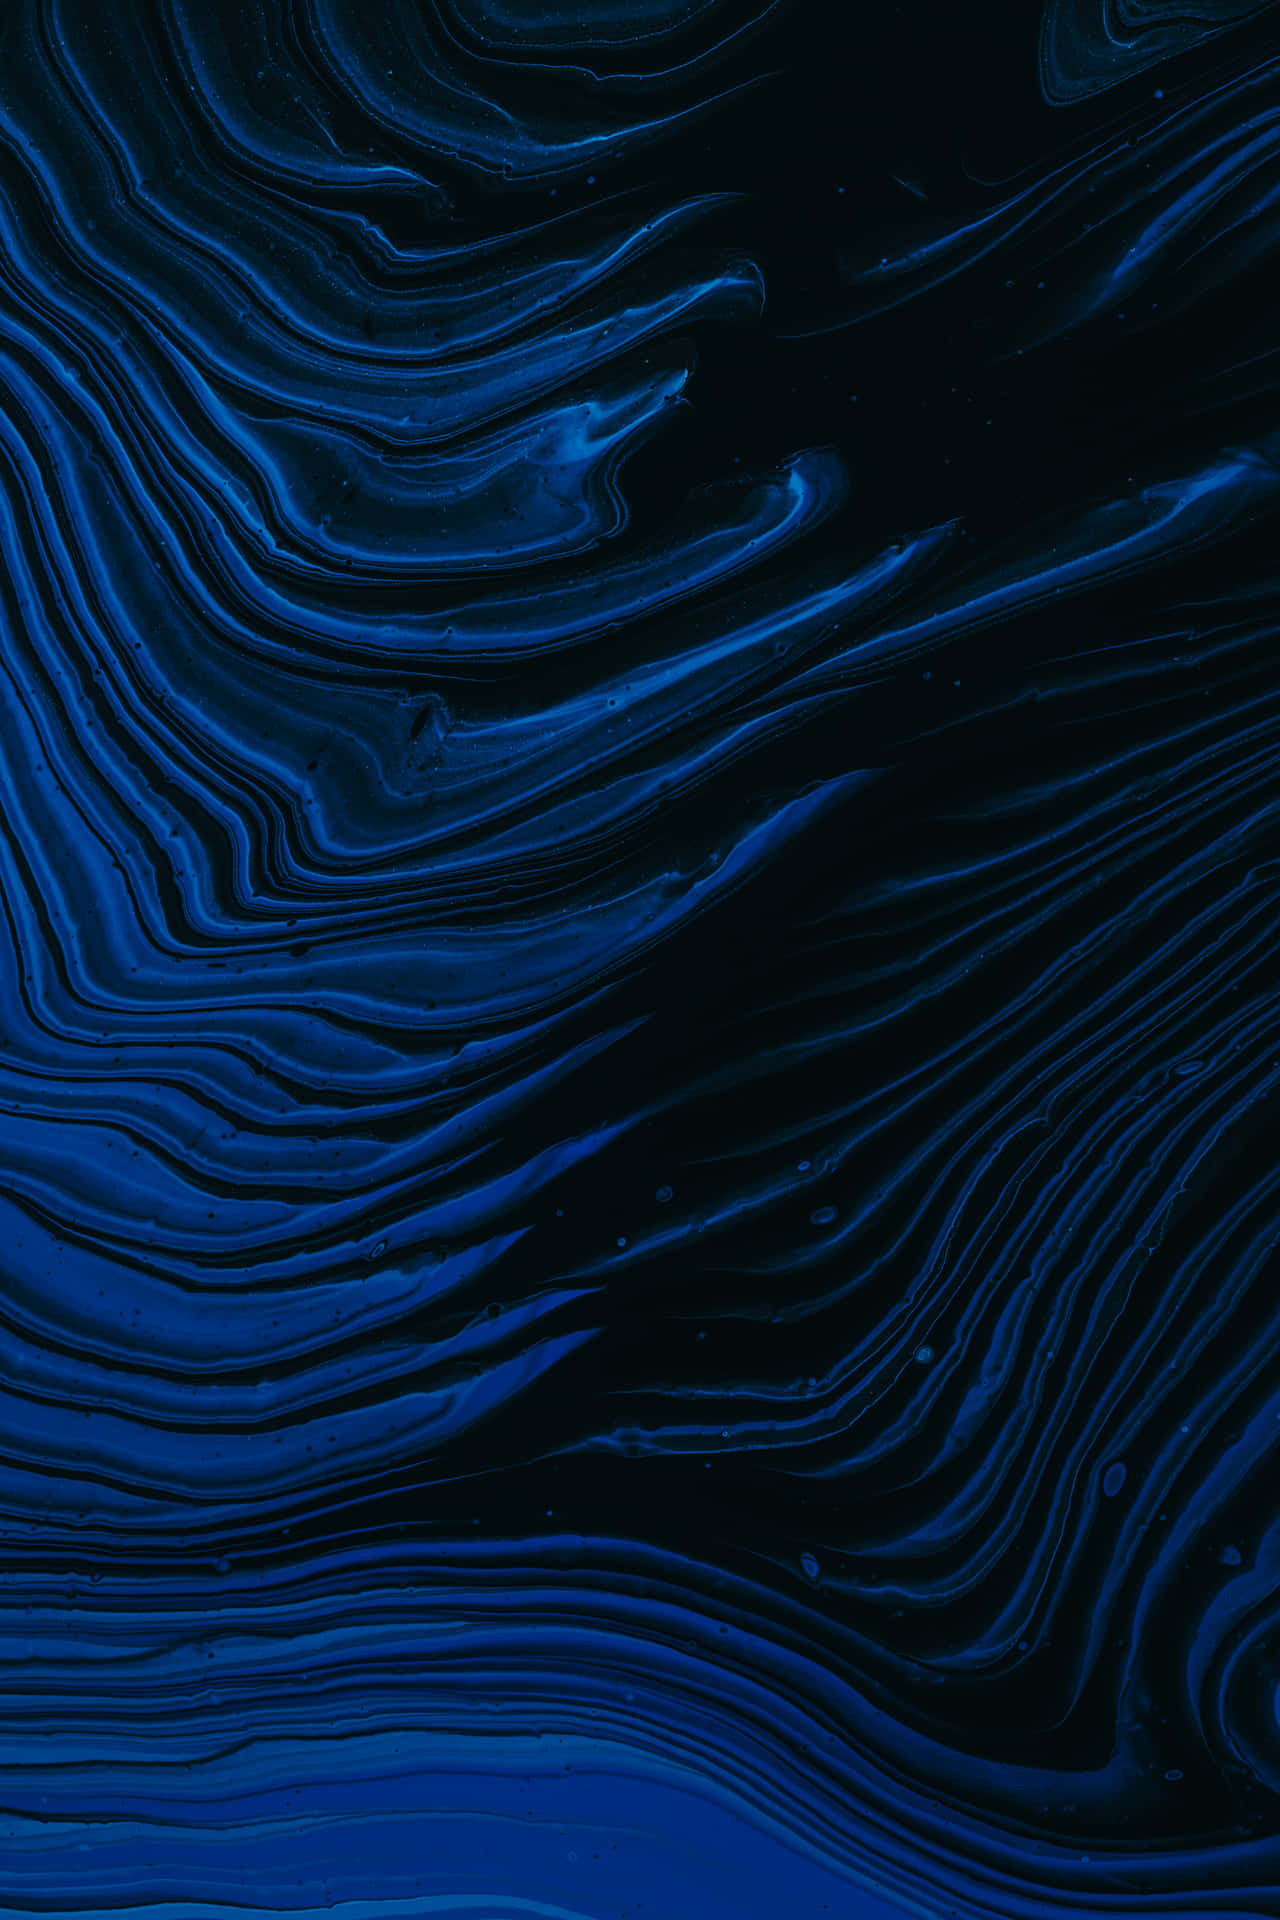 Tonosiridiscentes De Azul Oscuro Crean Un Aspecto Calmante Y Elegante. Fondo de pantalla